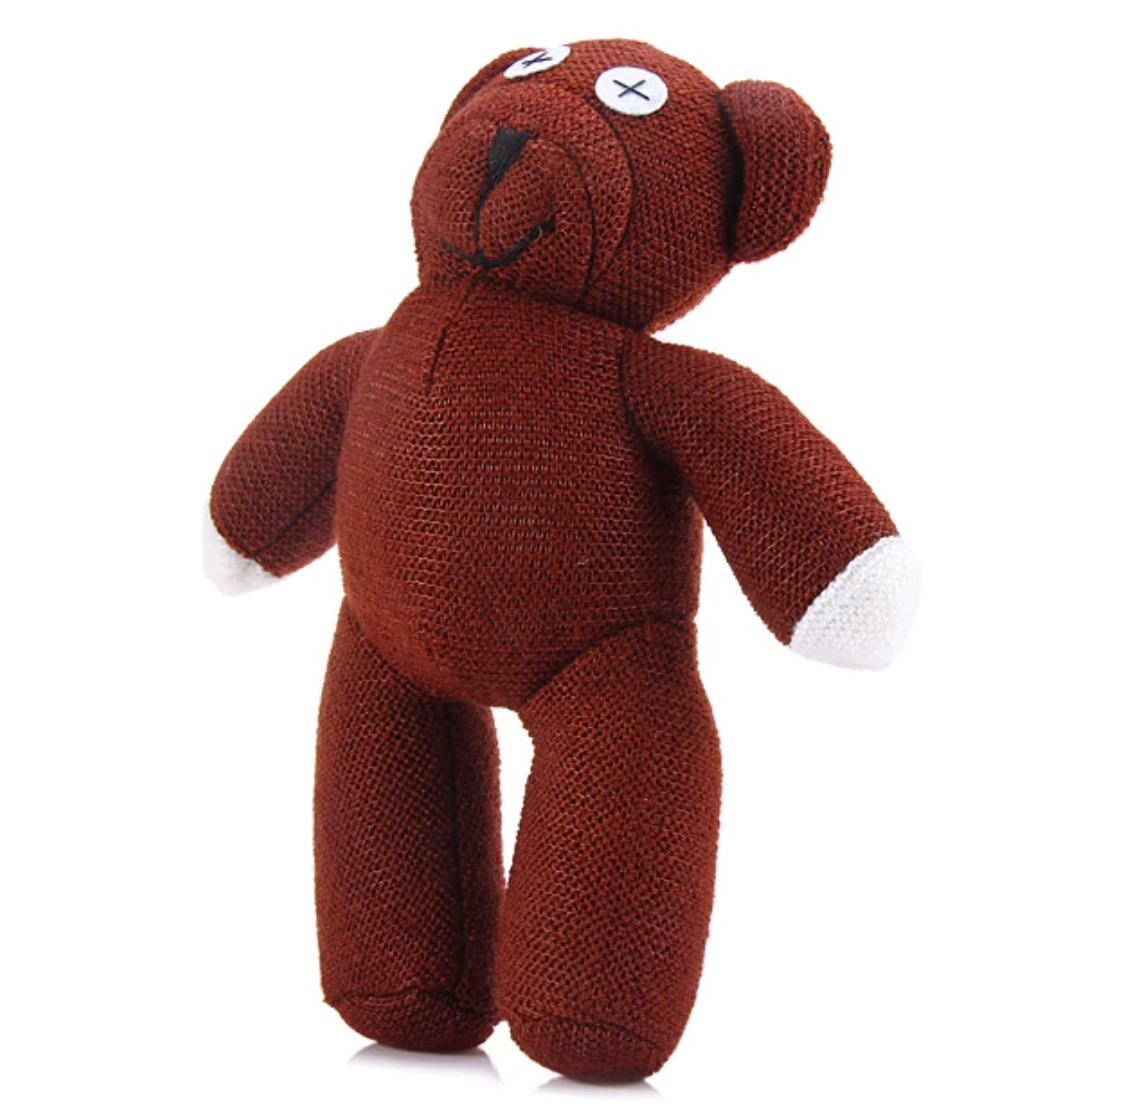 Mr. Bean Teddy (22cm) für nur 1,71 Euro inkl. Versand